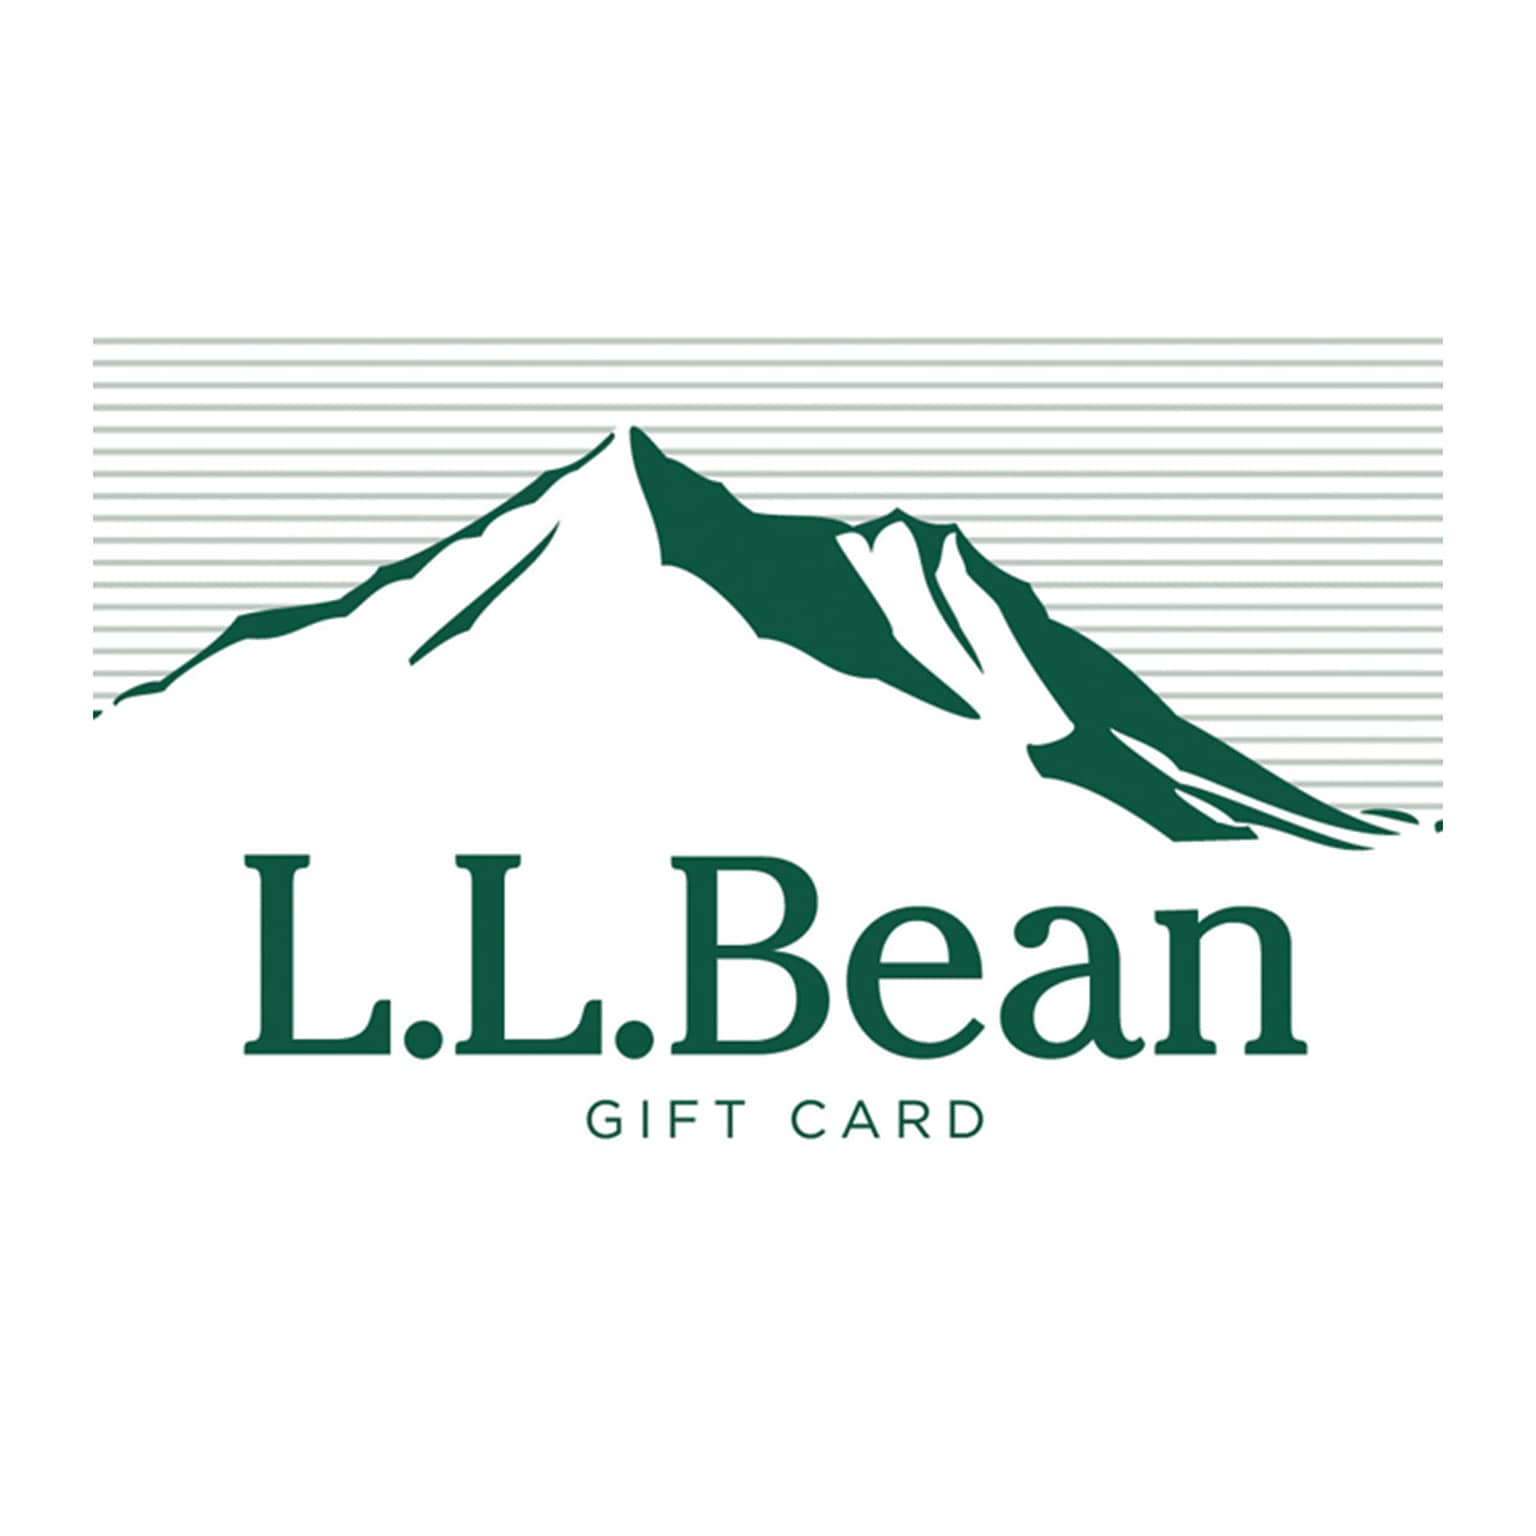 L.L.Bean Gift Card $100